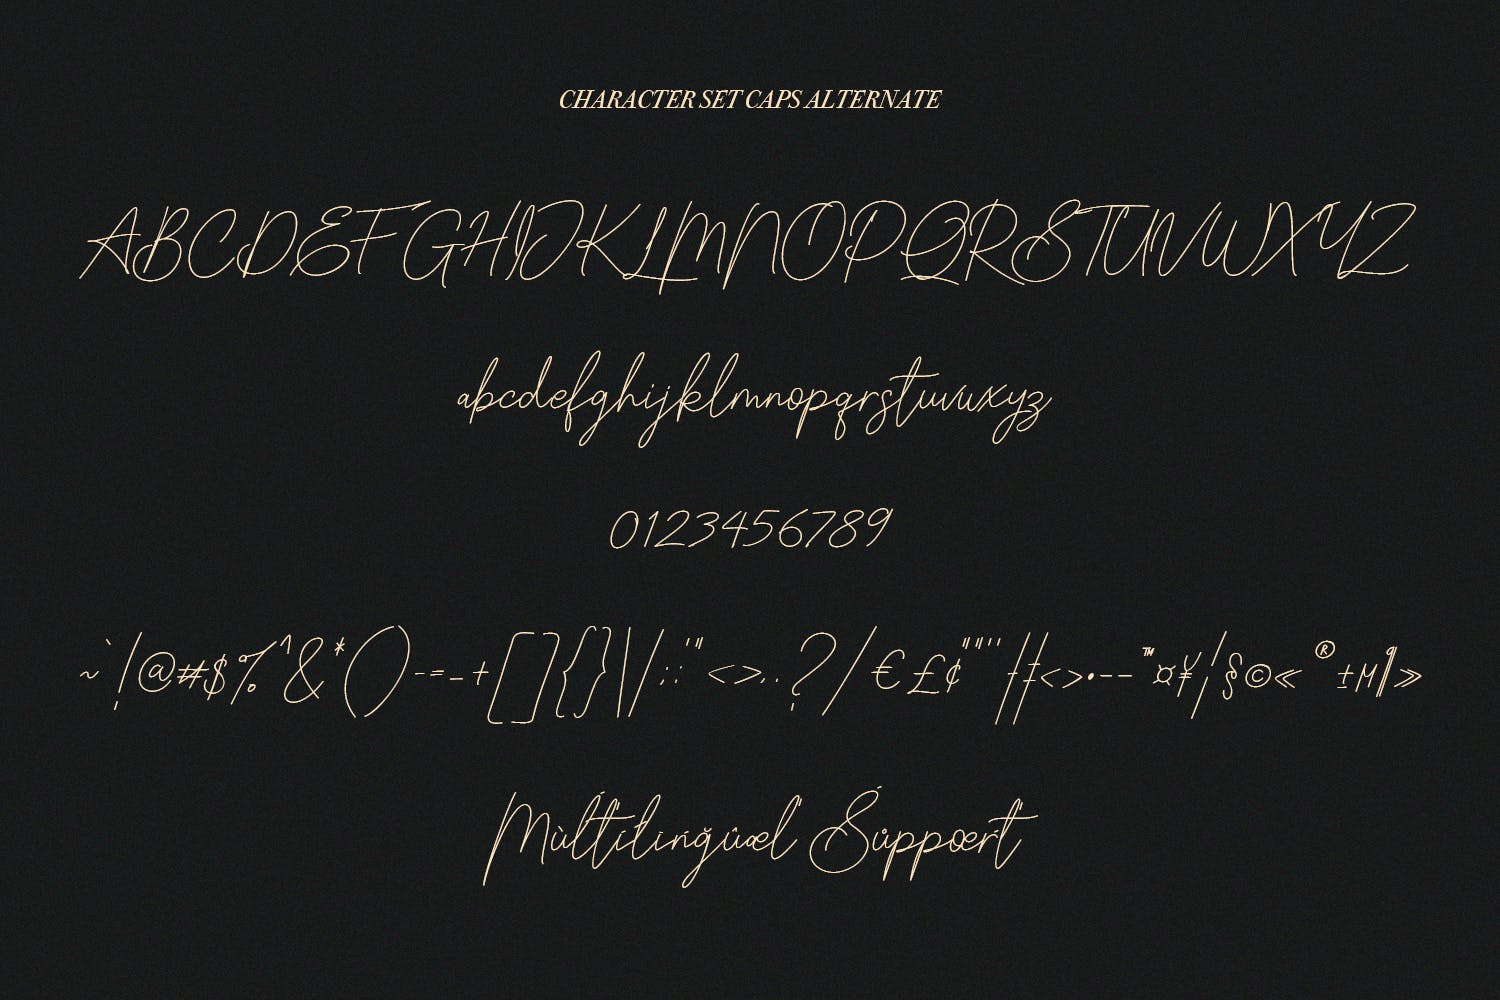 英文手写签名字体合集 Slothwilds Handwritten Typeface 设计素材 第12张